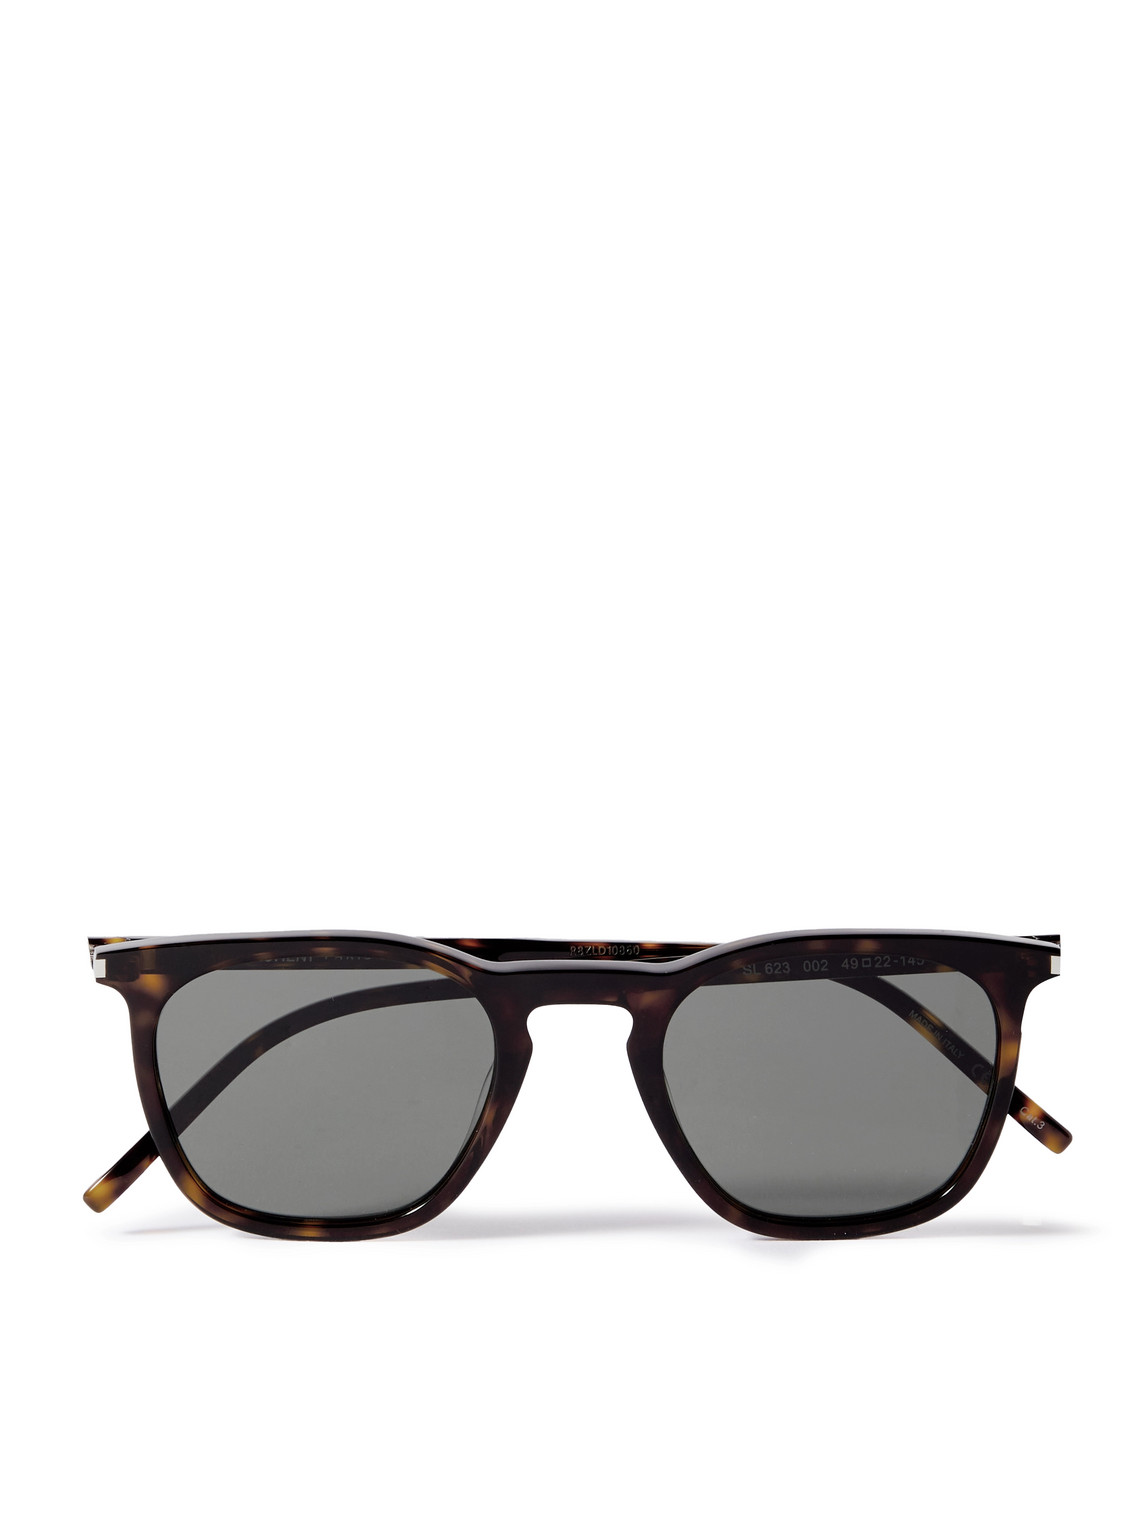 Saint Laurent D-frame Tortoiseshell Recycled-acetate Sunglasses In Black